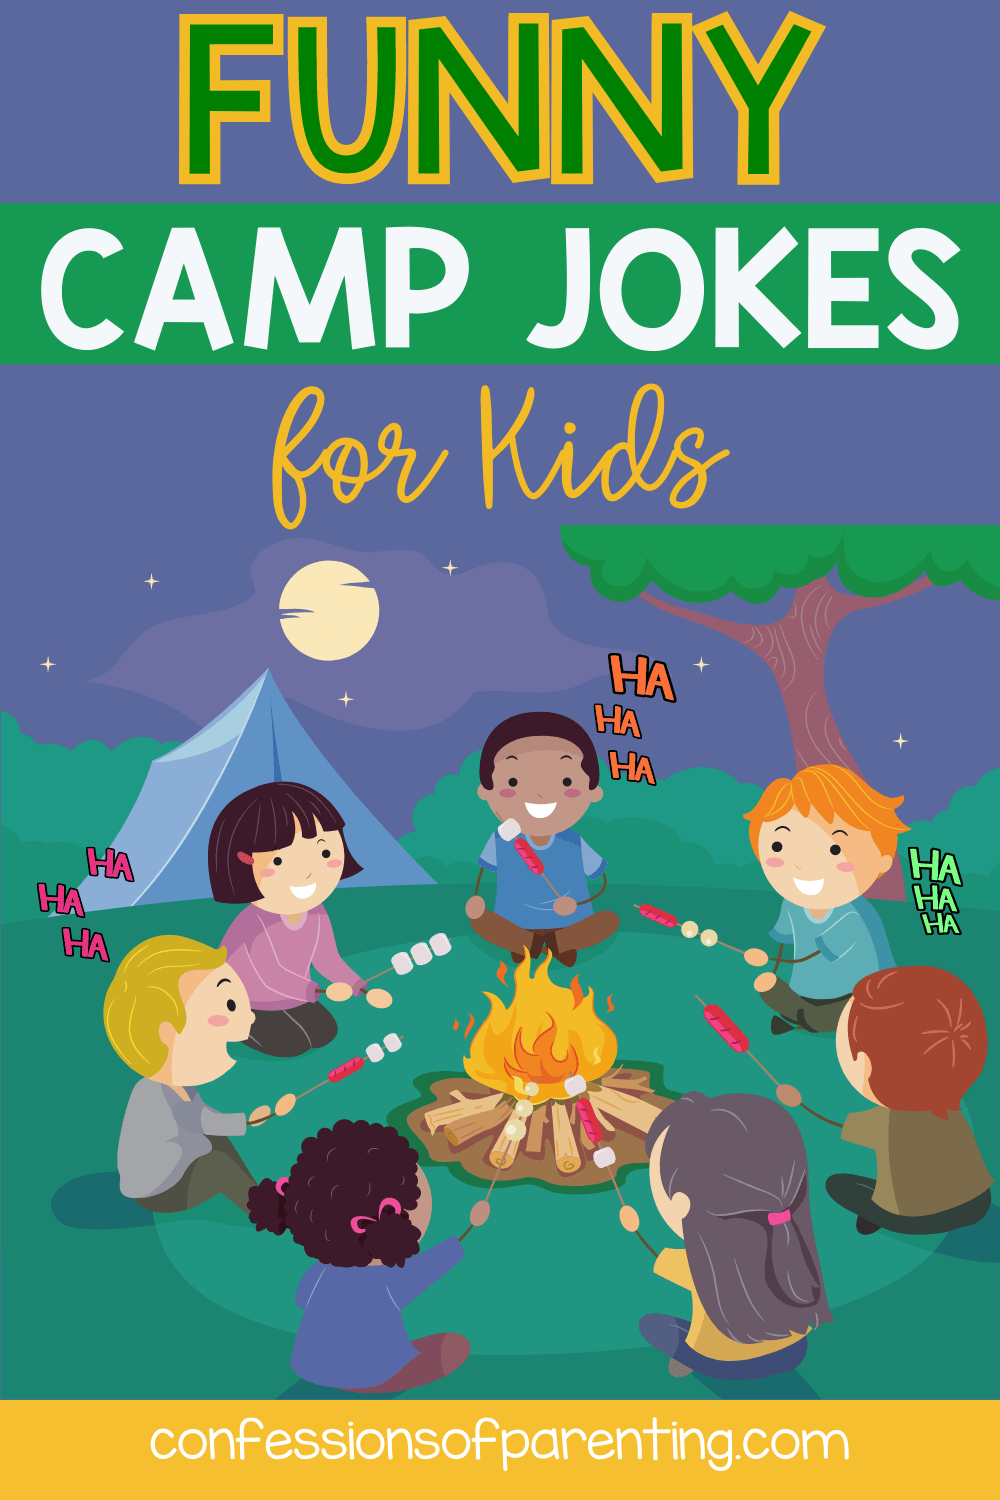 camp jokes for kids